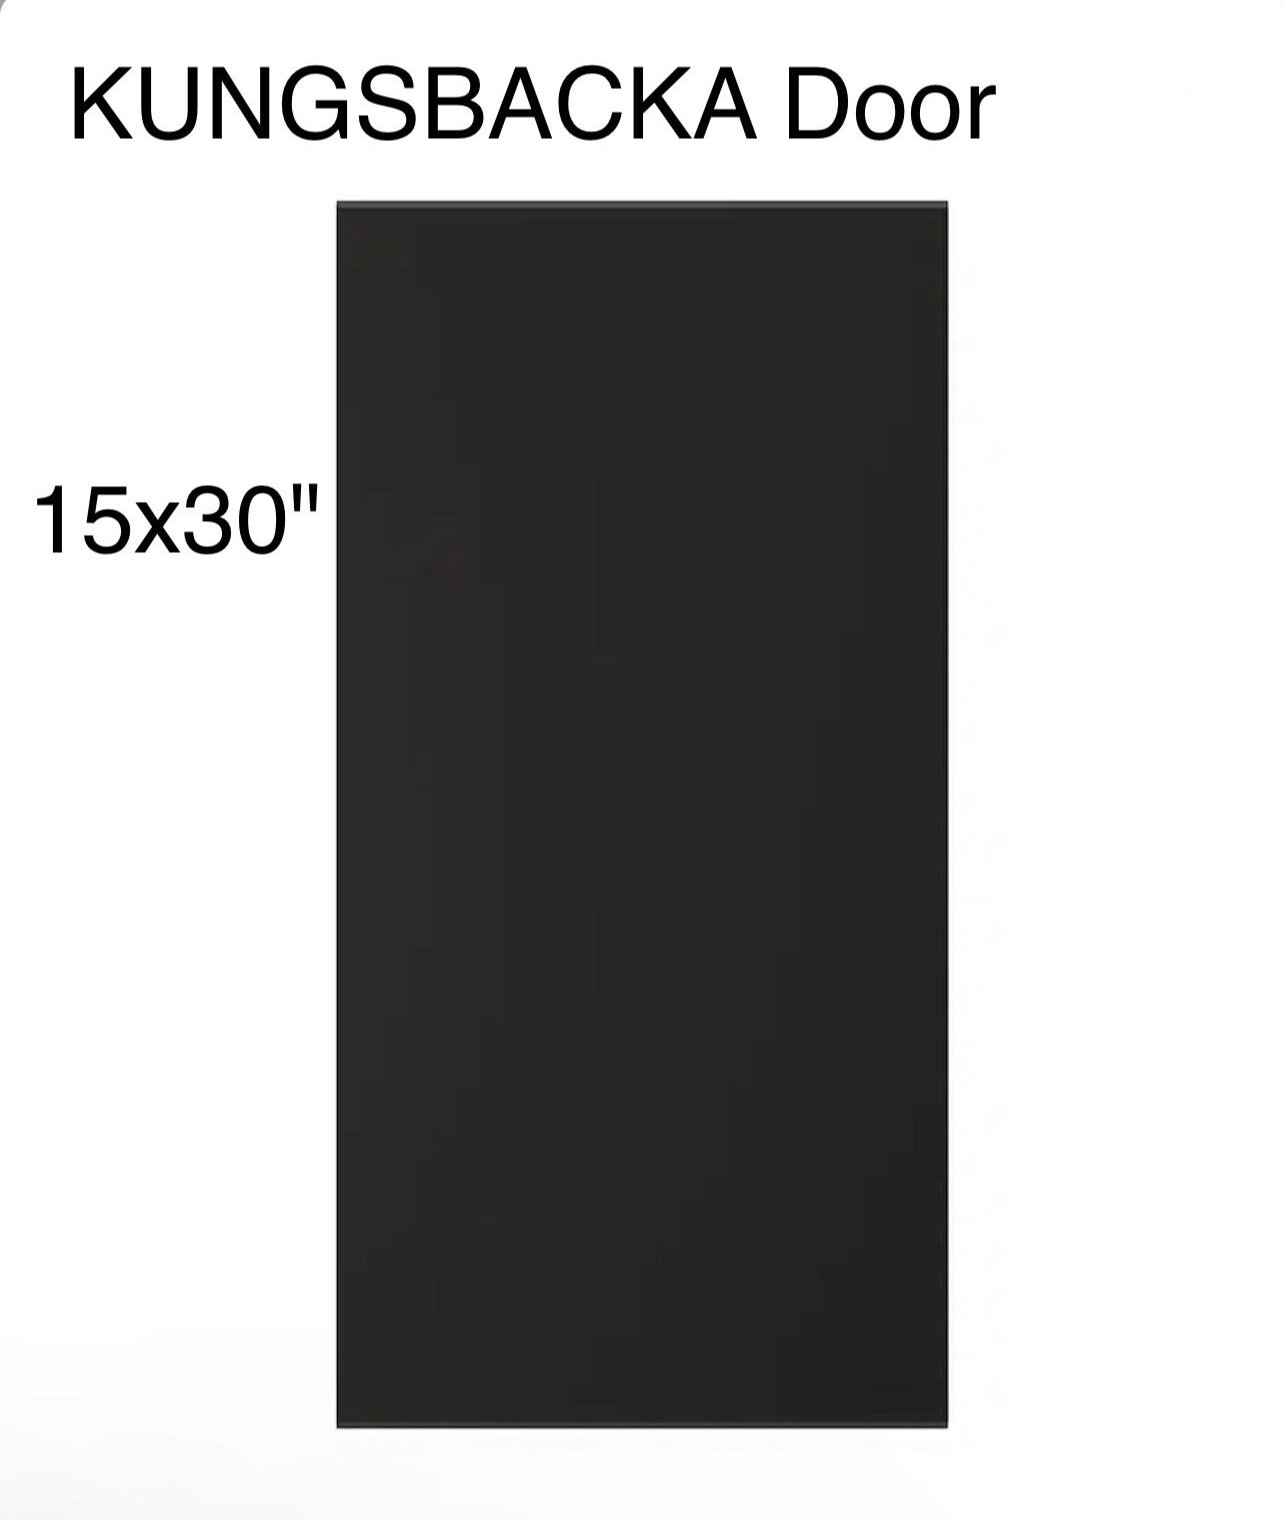 IKEA KUNGSBACKA 15x30“ door anthracite 903.379.22 LkLKpXwxS